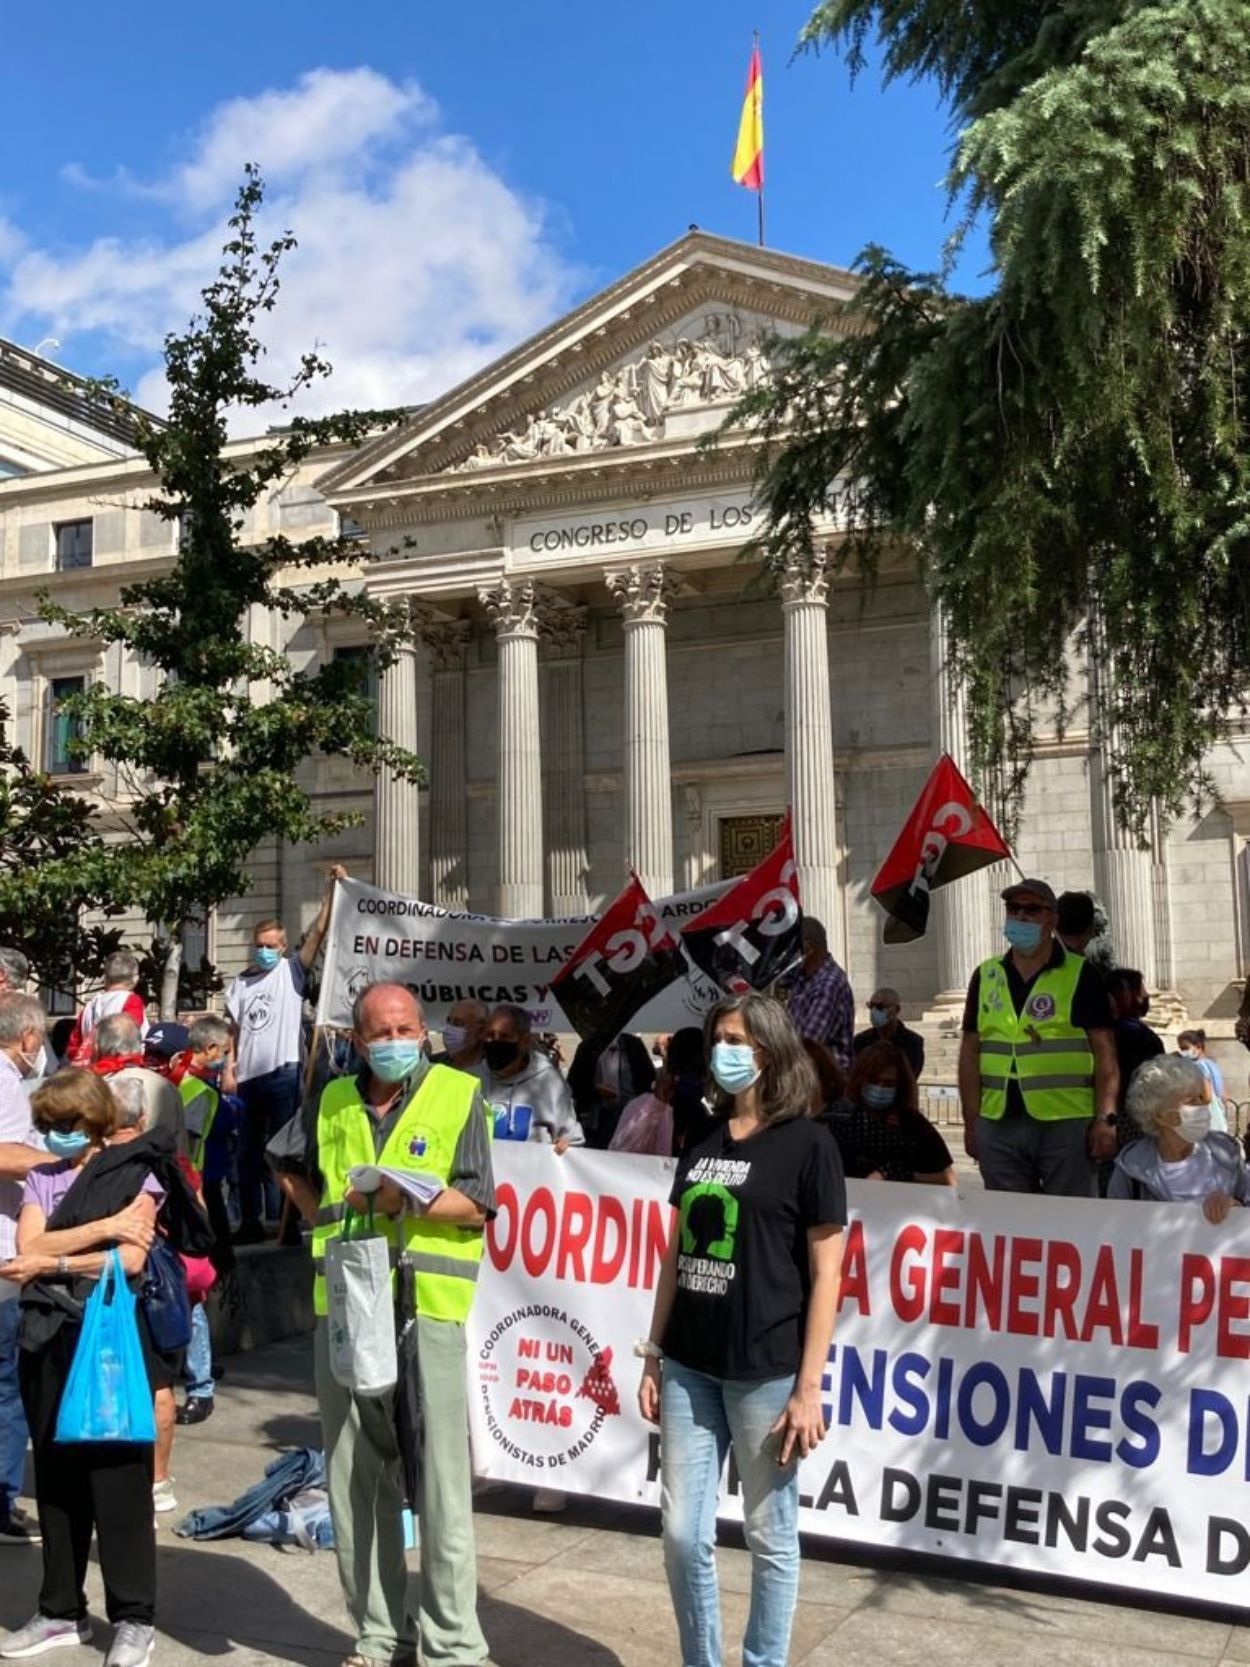 El 2 de octubre, los pensionistas tomarán Madrid contra el recorte en pensiones y servicios públicos (Foto, Otoño Caliente)